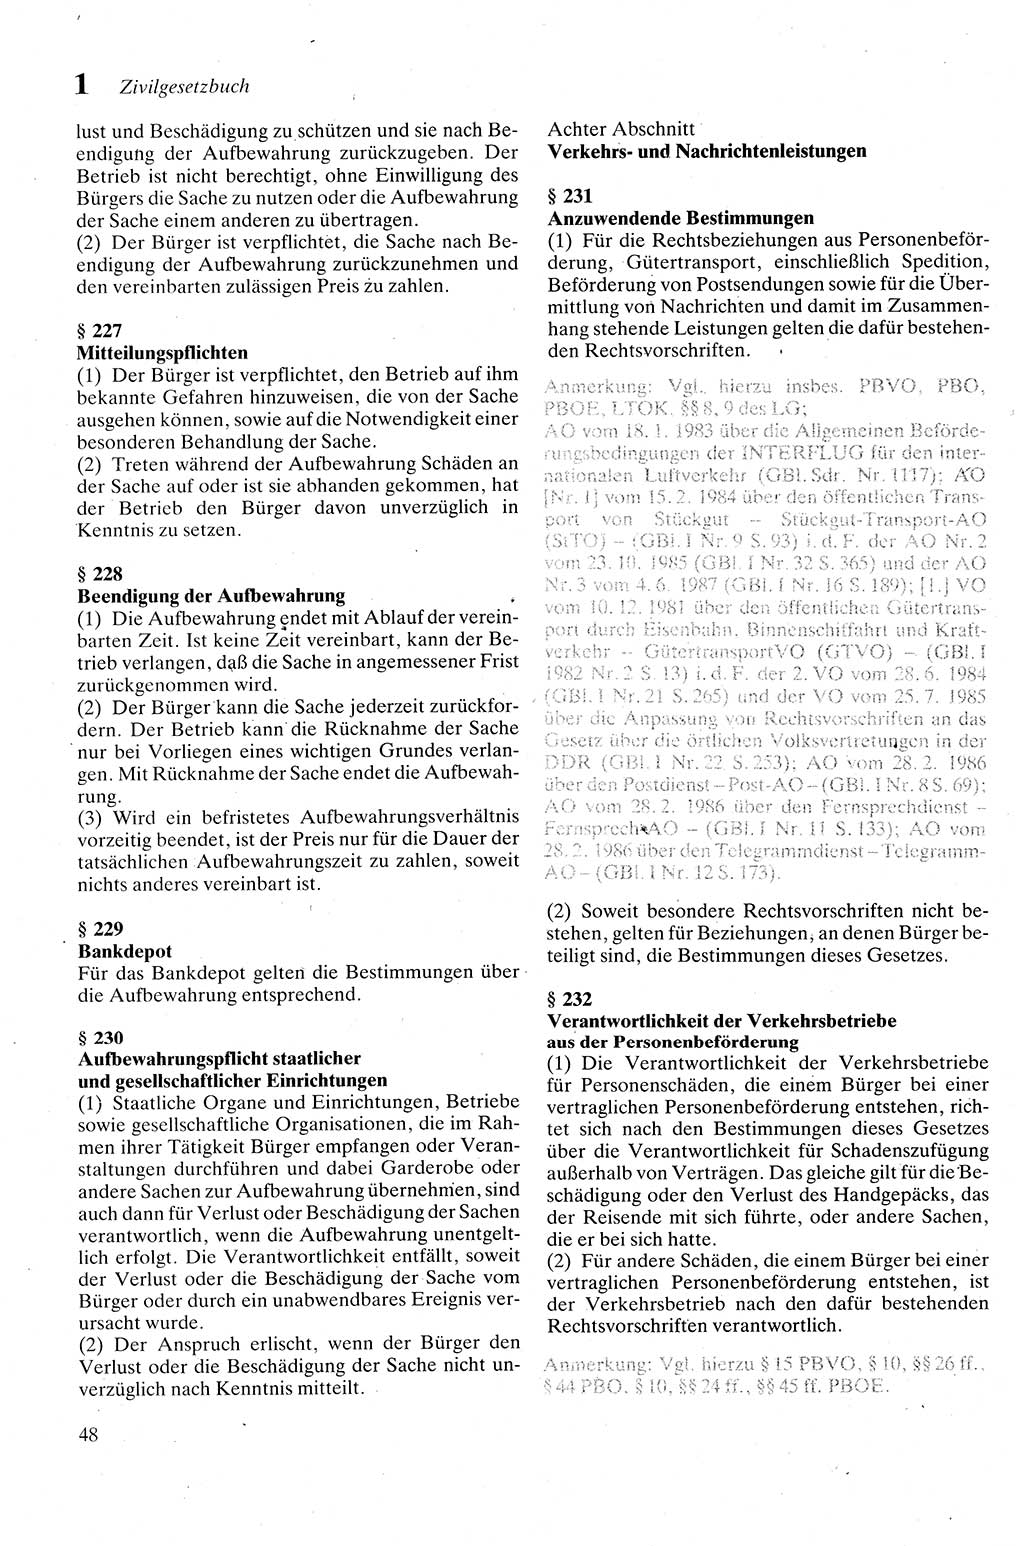 Zivilgesetzbuch (ZVG) sowie angrenzende Gesetze und Bestimmungen [Deutsche Demokratische Republik (DDR)] 1975, Seite 48 (ZGB Ges. Best. DDR 1975, S. 48)